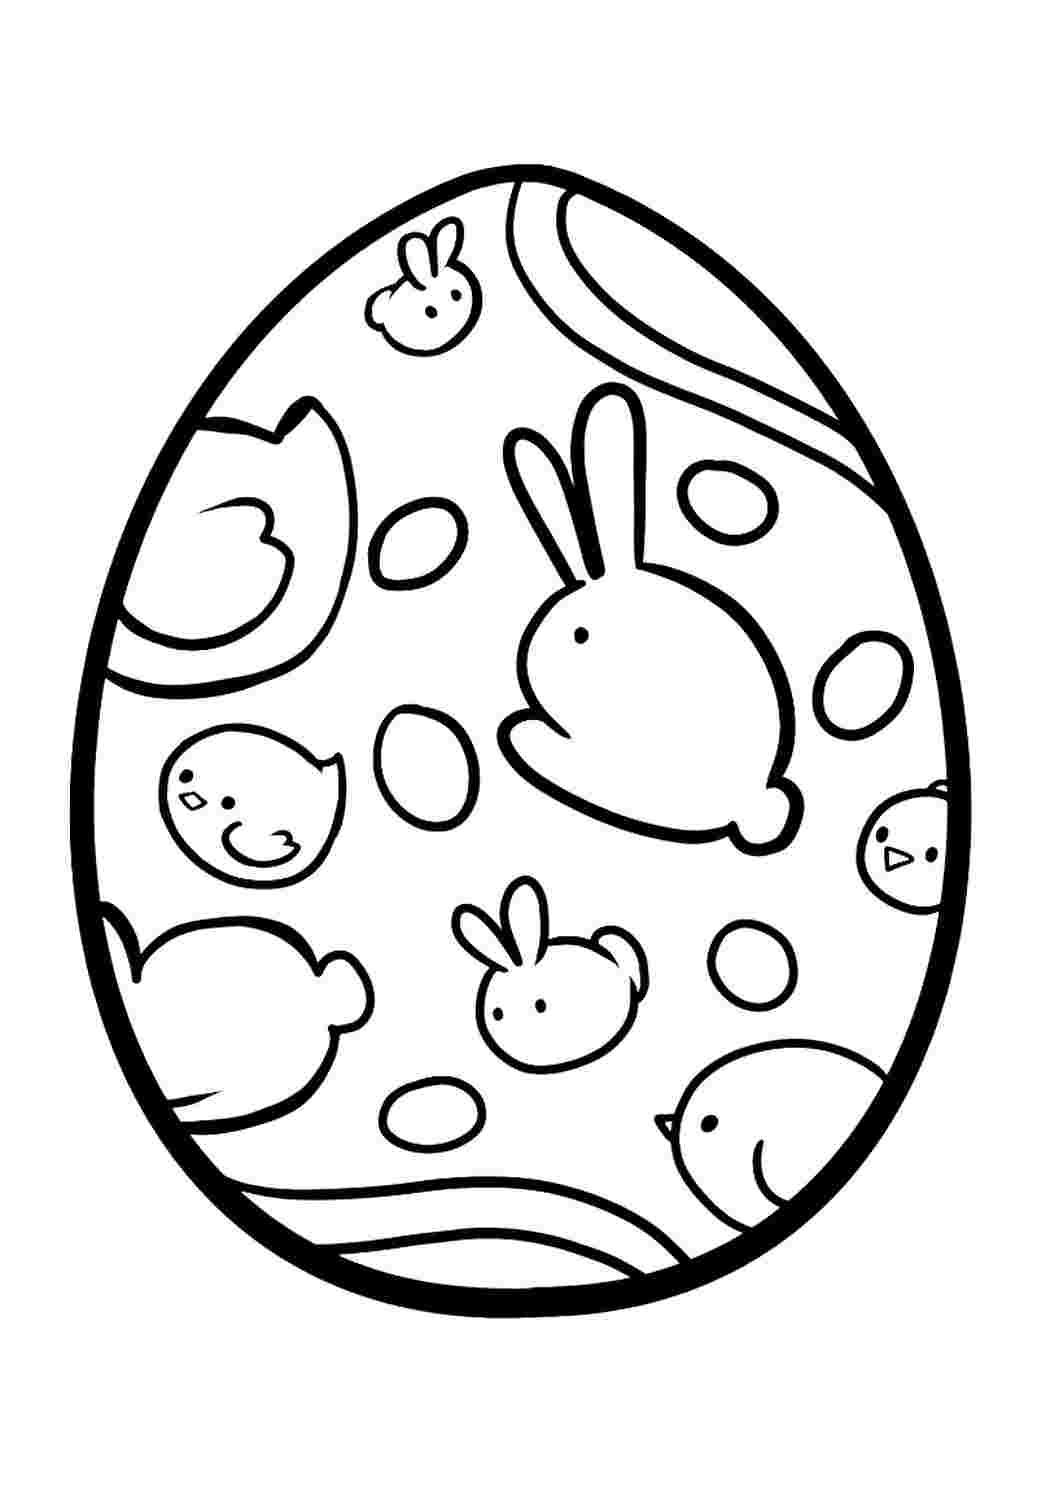 Раскраска Пасхальное яйцо с цыпленком, скачать и распечатать раскраску раздела Пасха